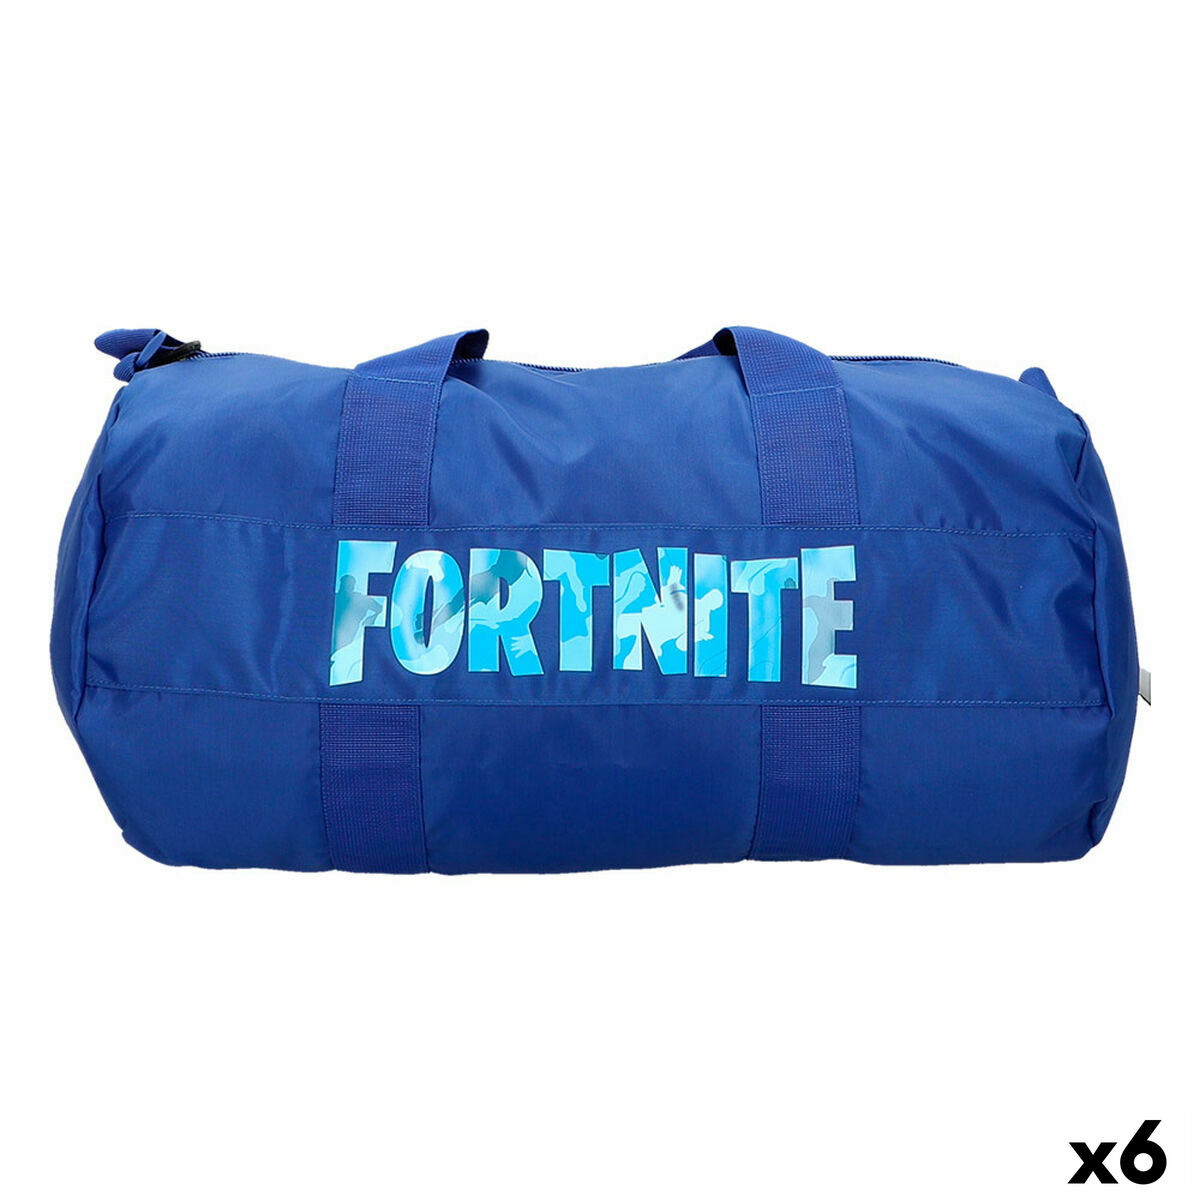 Sports bag Fortnite Blue 54 x 27 x 27 cm (6 Units)